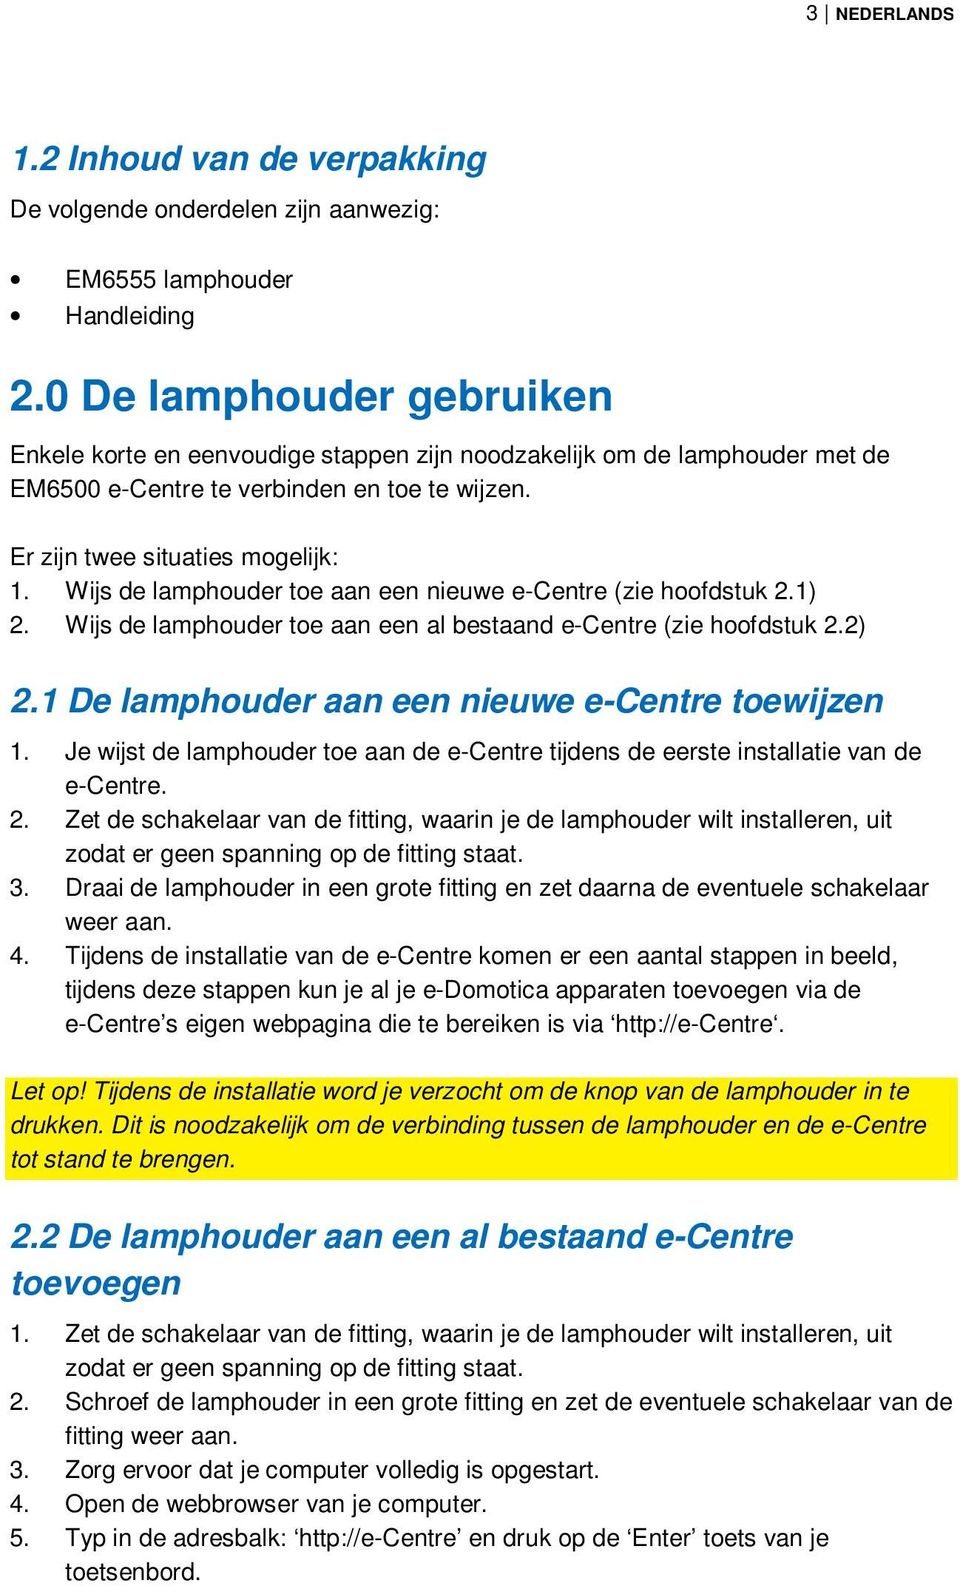 Wijs de lamphouder toe aan een nieuwe e-centre (zie hoofdstuk 2.1) 2. Wijs de lamphouder toe aan een al bestaand e-centre (zie hoofdstuk 2.2) 2.1 De lamphouder aan een nieuwe e-centre toewijzen 1.